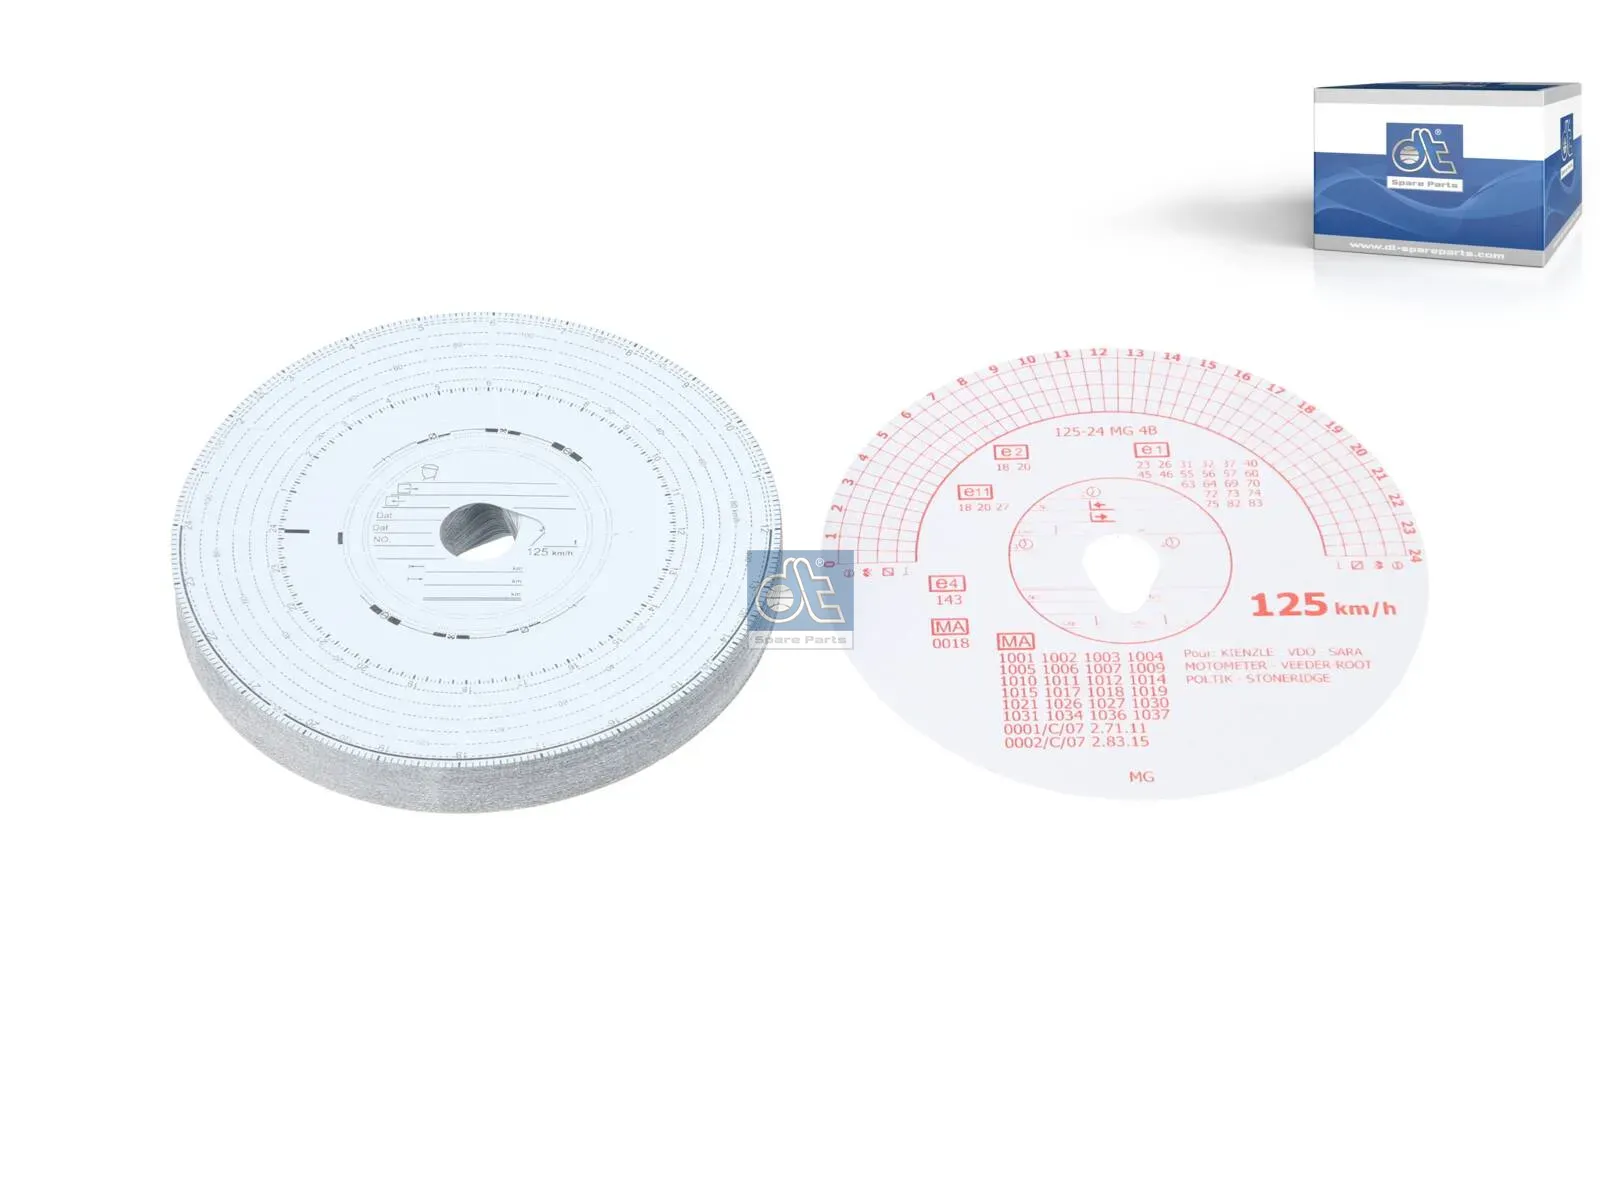 Комплект диаграммных дисков, 1 день, 125 км/ч